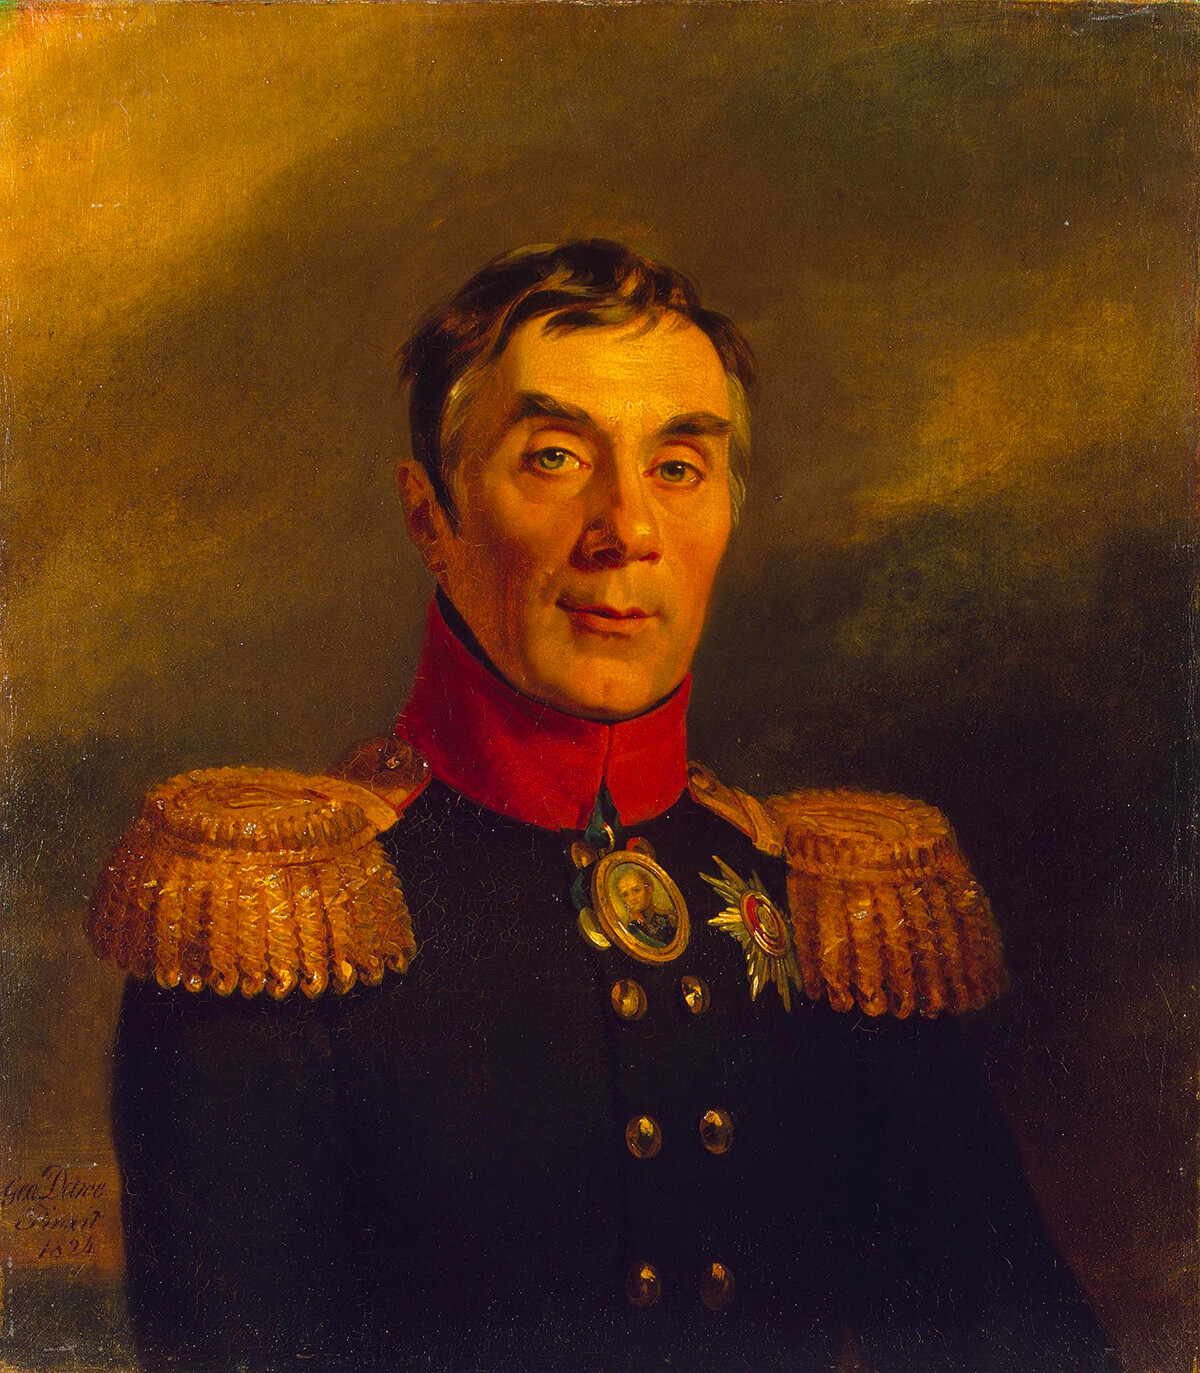 Alexey Arakcheev by George Dawe, 1824